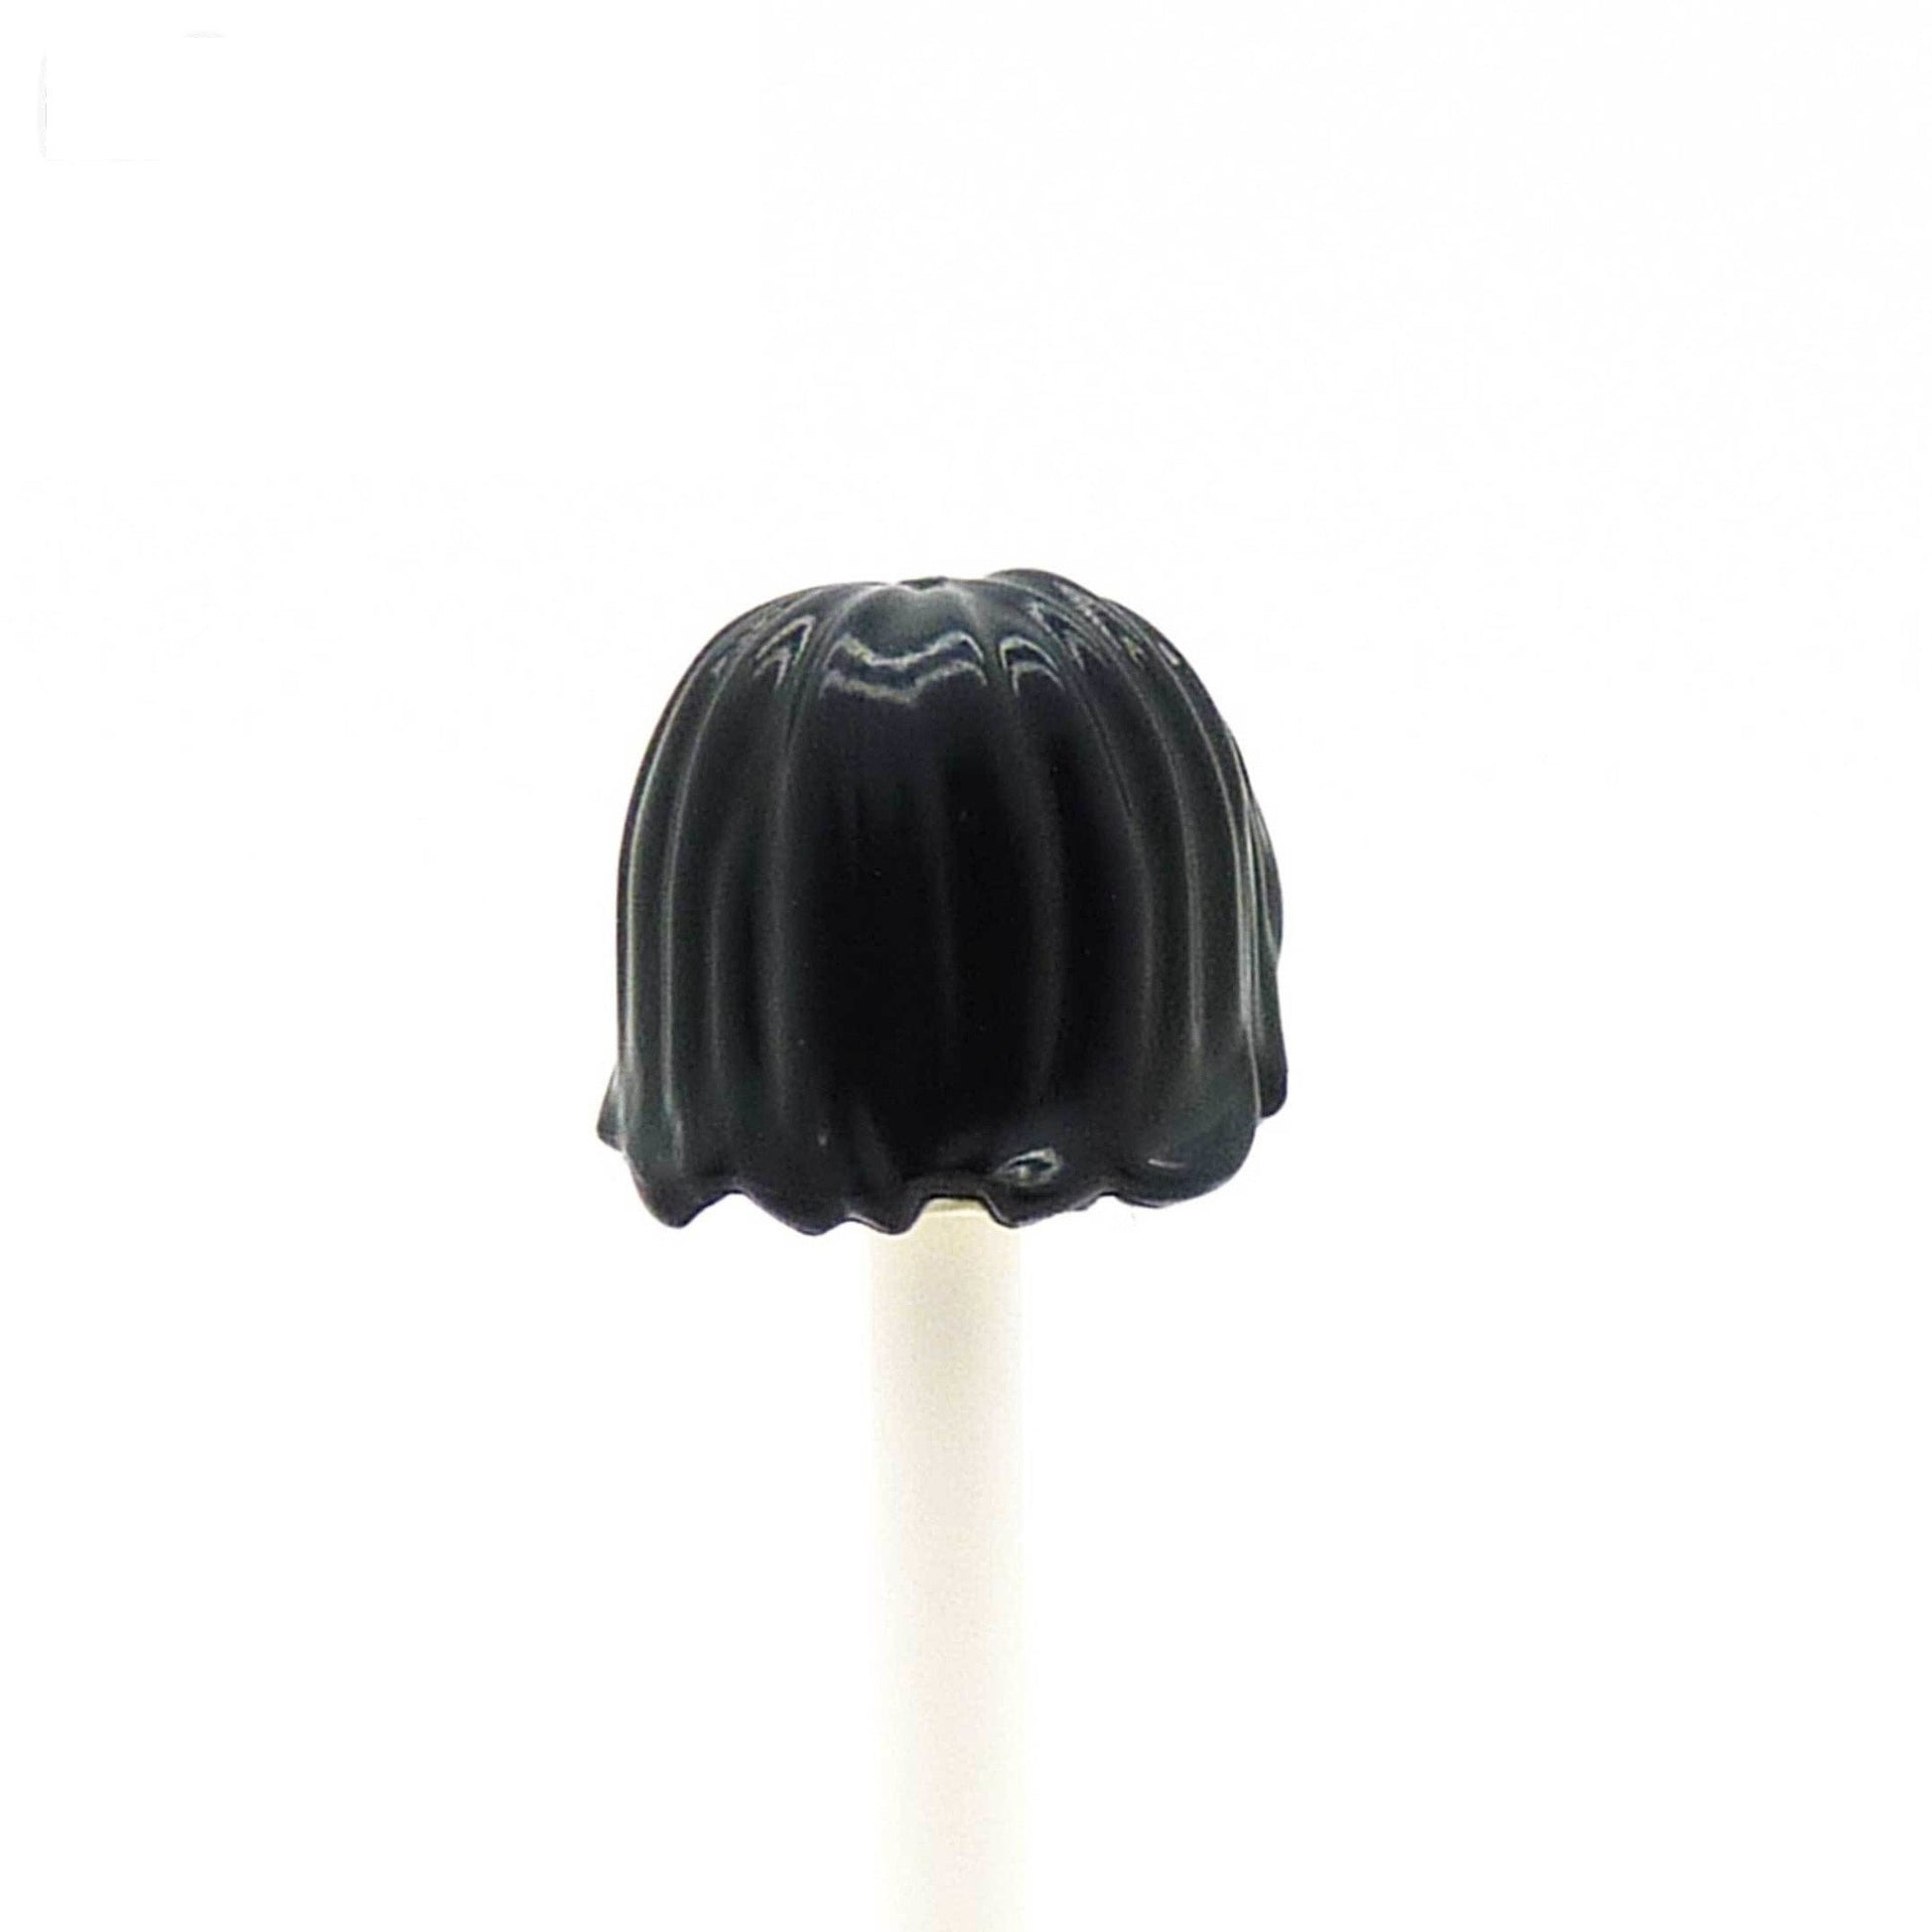 Black Shaggy Hair - LEGO Minifigure Hair